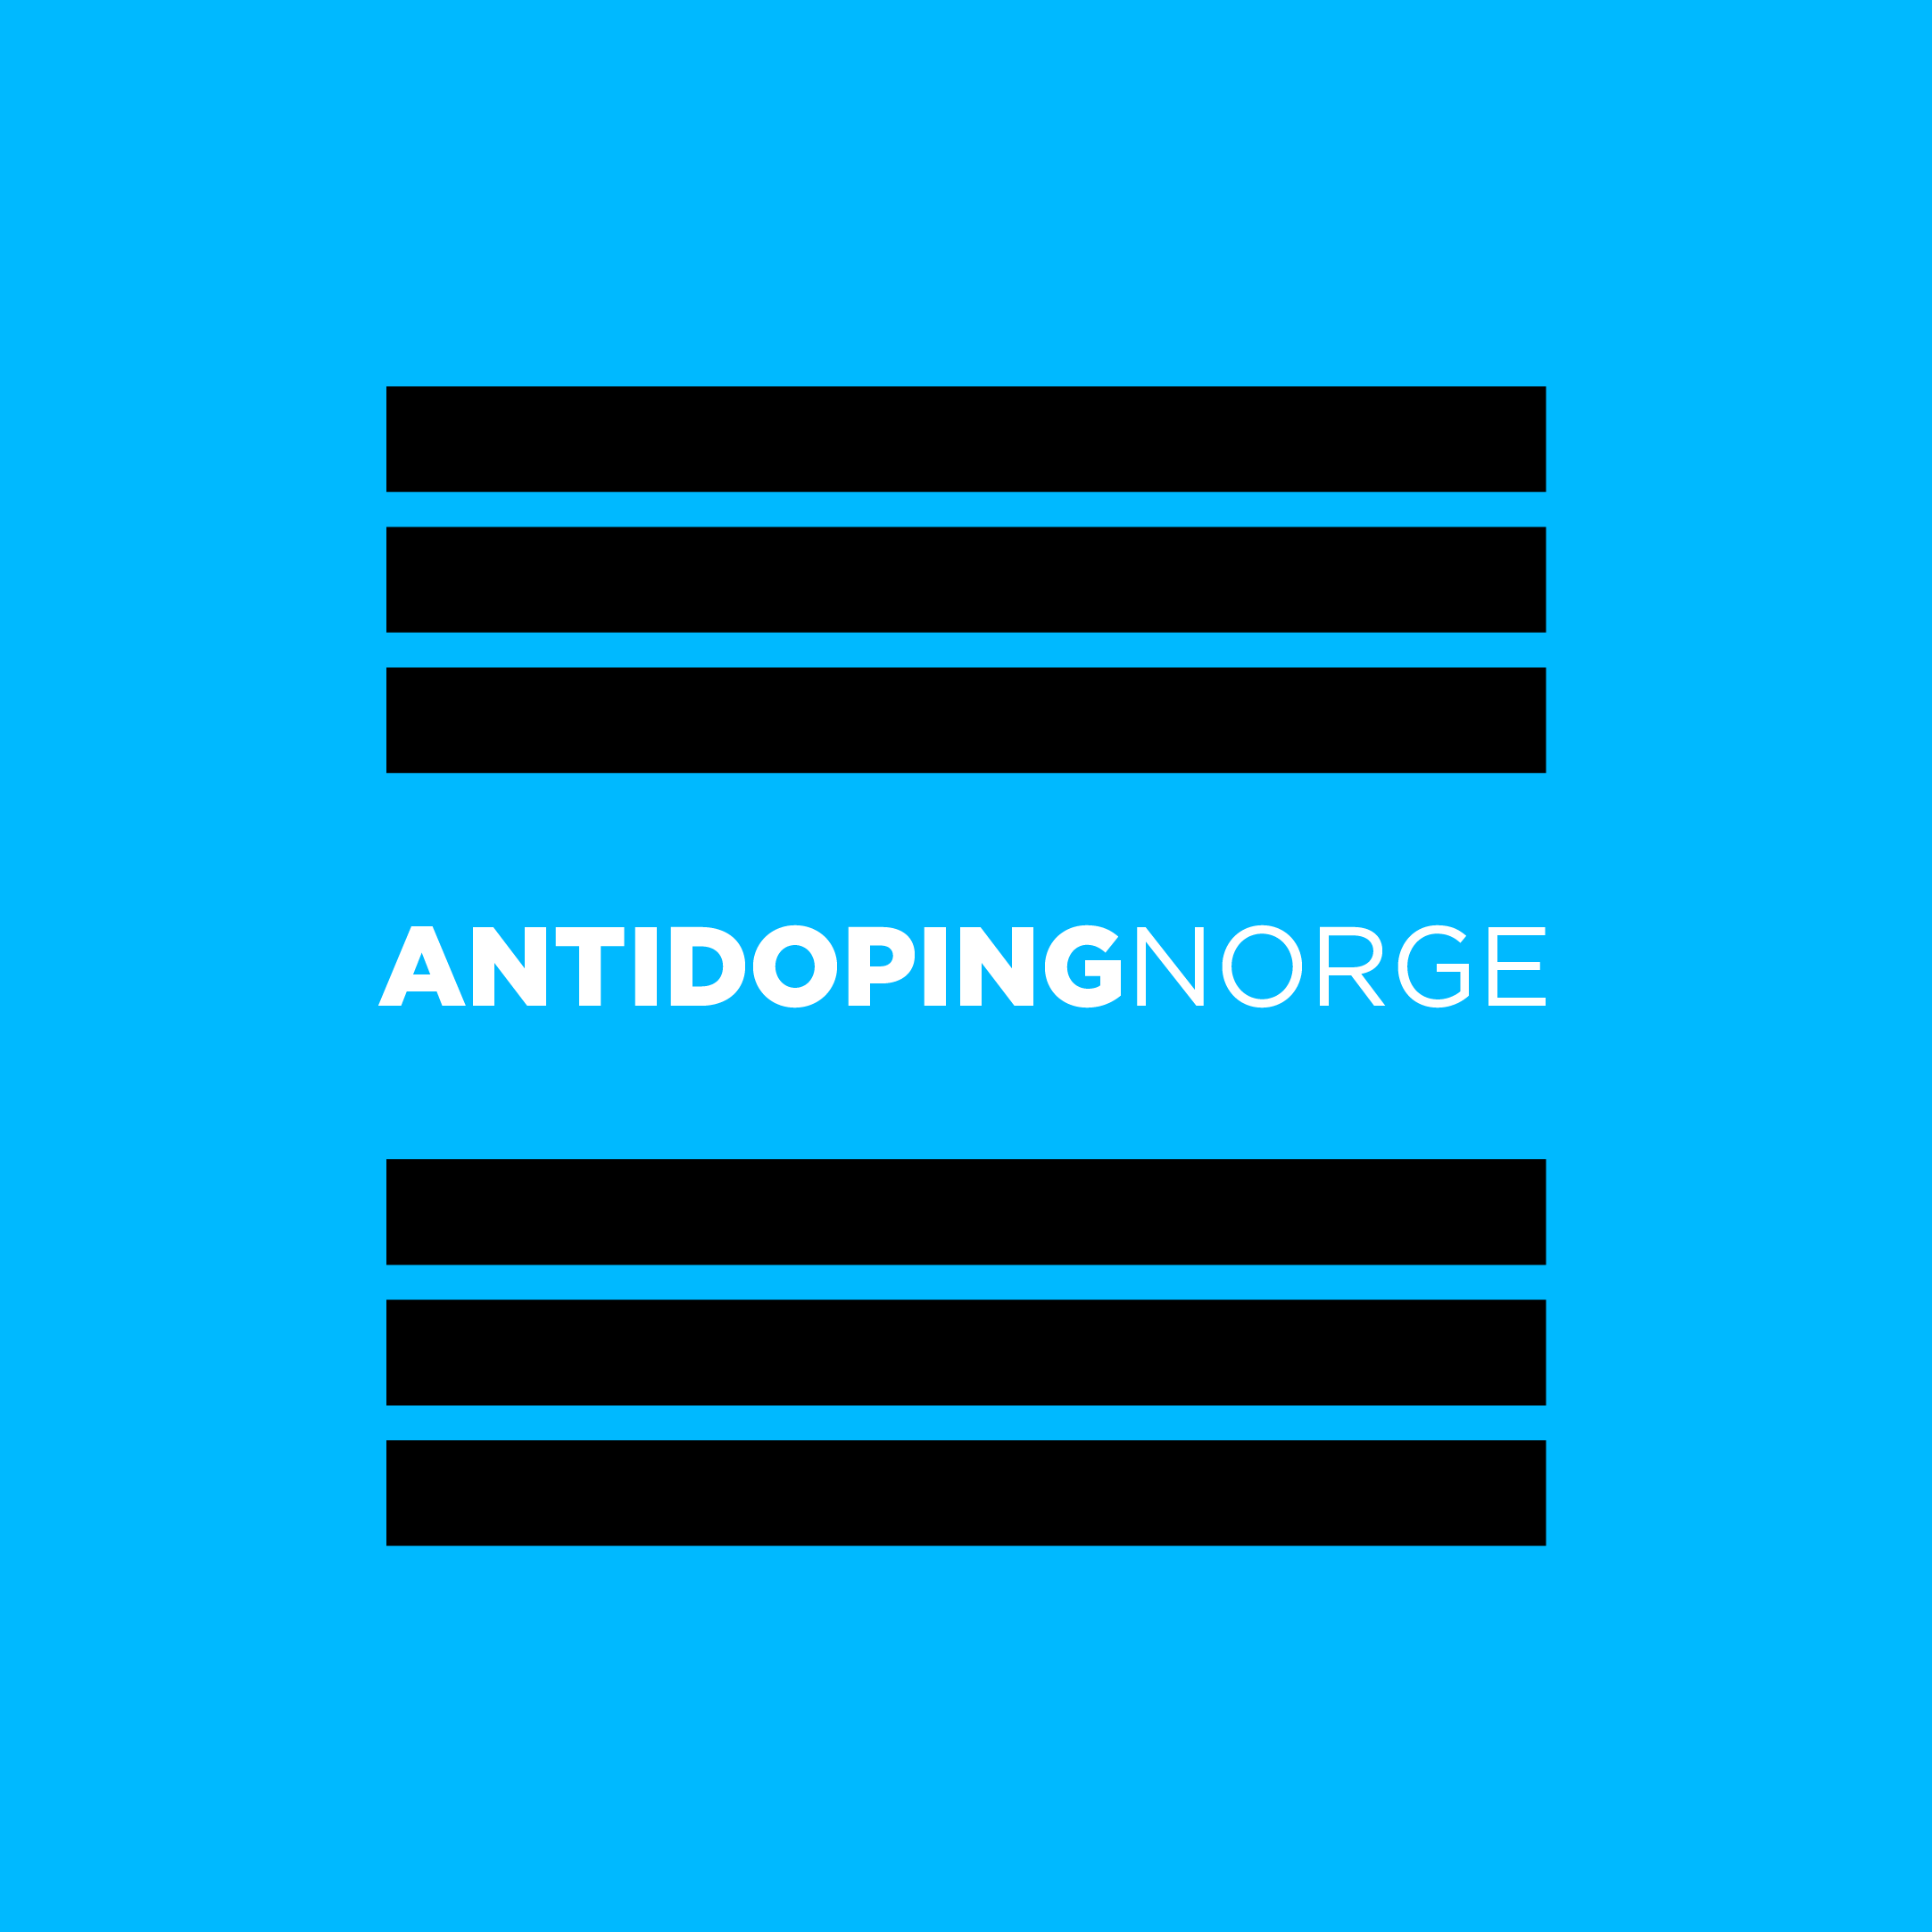 antidoping_logo.png